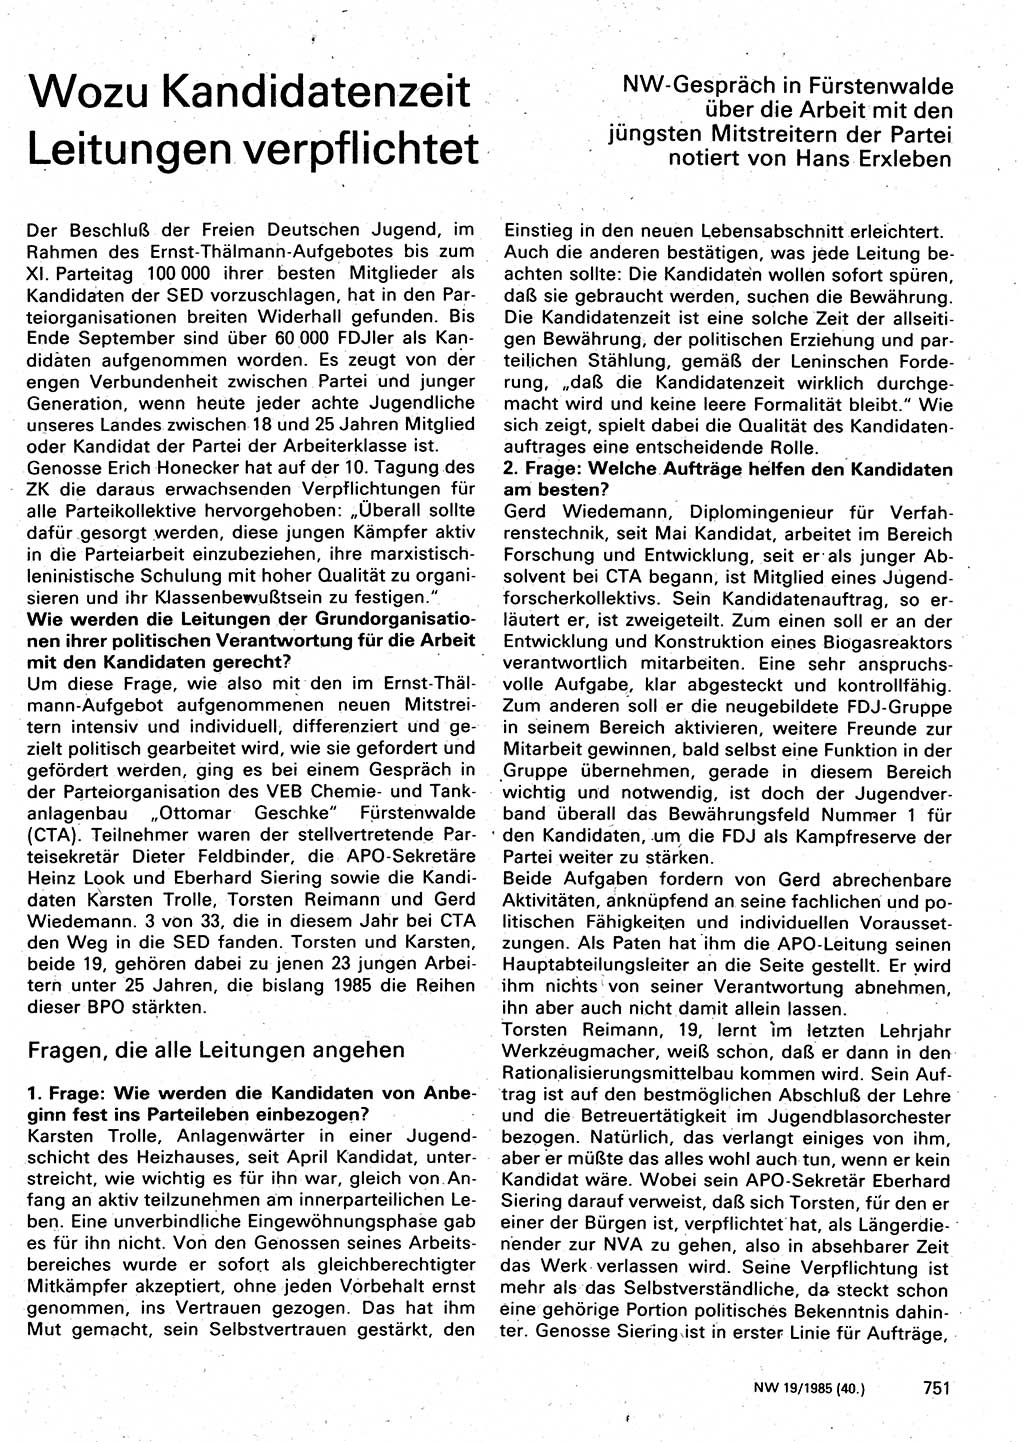 Neuer Weg (NW), Organ des Zentralkomitees (ZK) der SED (Sozialistische Einheitspartei Deutschlands) für Fragen des Parteilebens, 40. Jahrgang [Deutsche Demokratische Republik (DDR)] 1985, Seite 751 (NW ZK SED DDR 1985, S. 751)